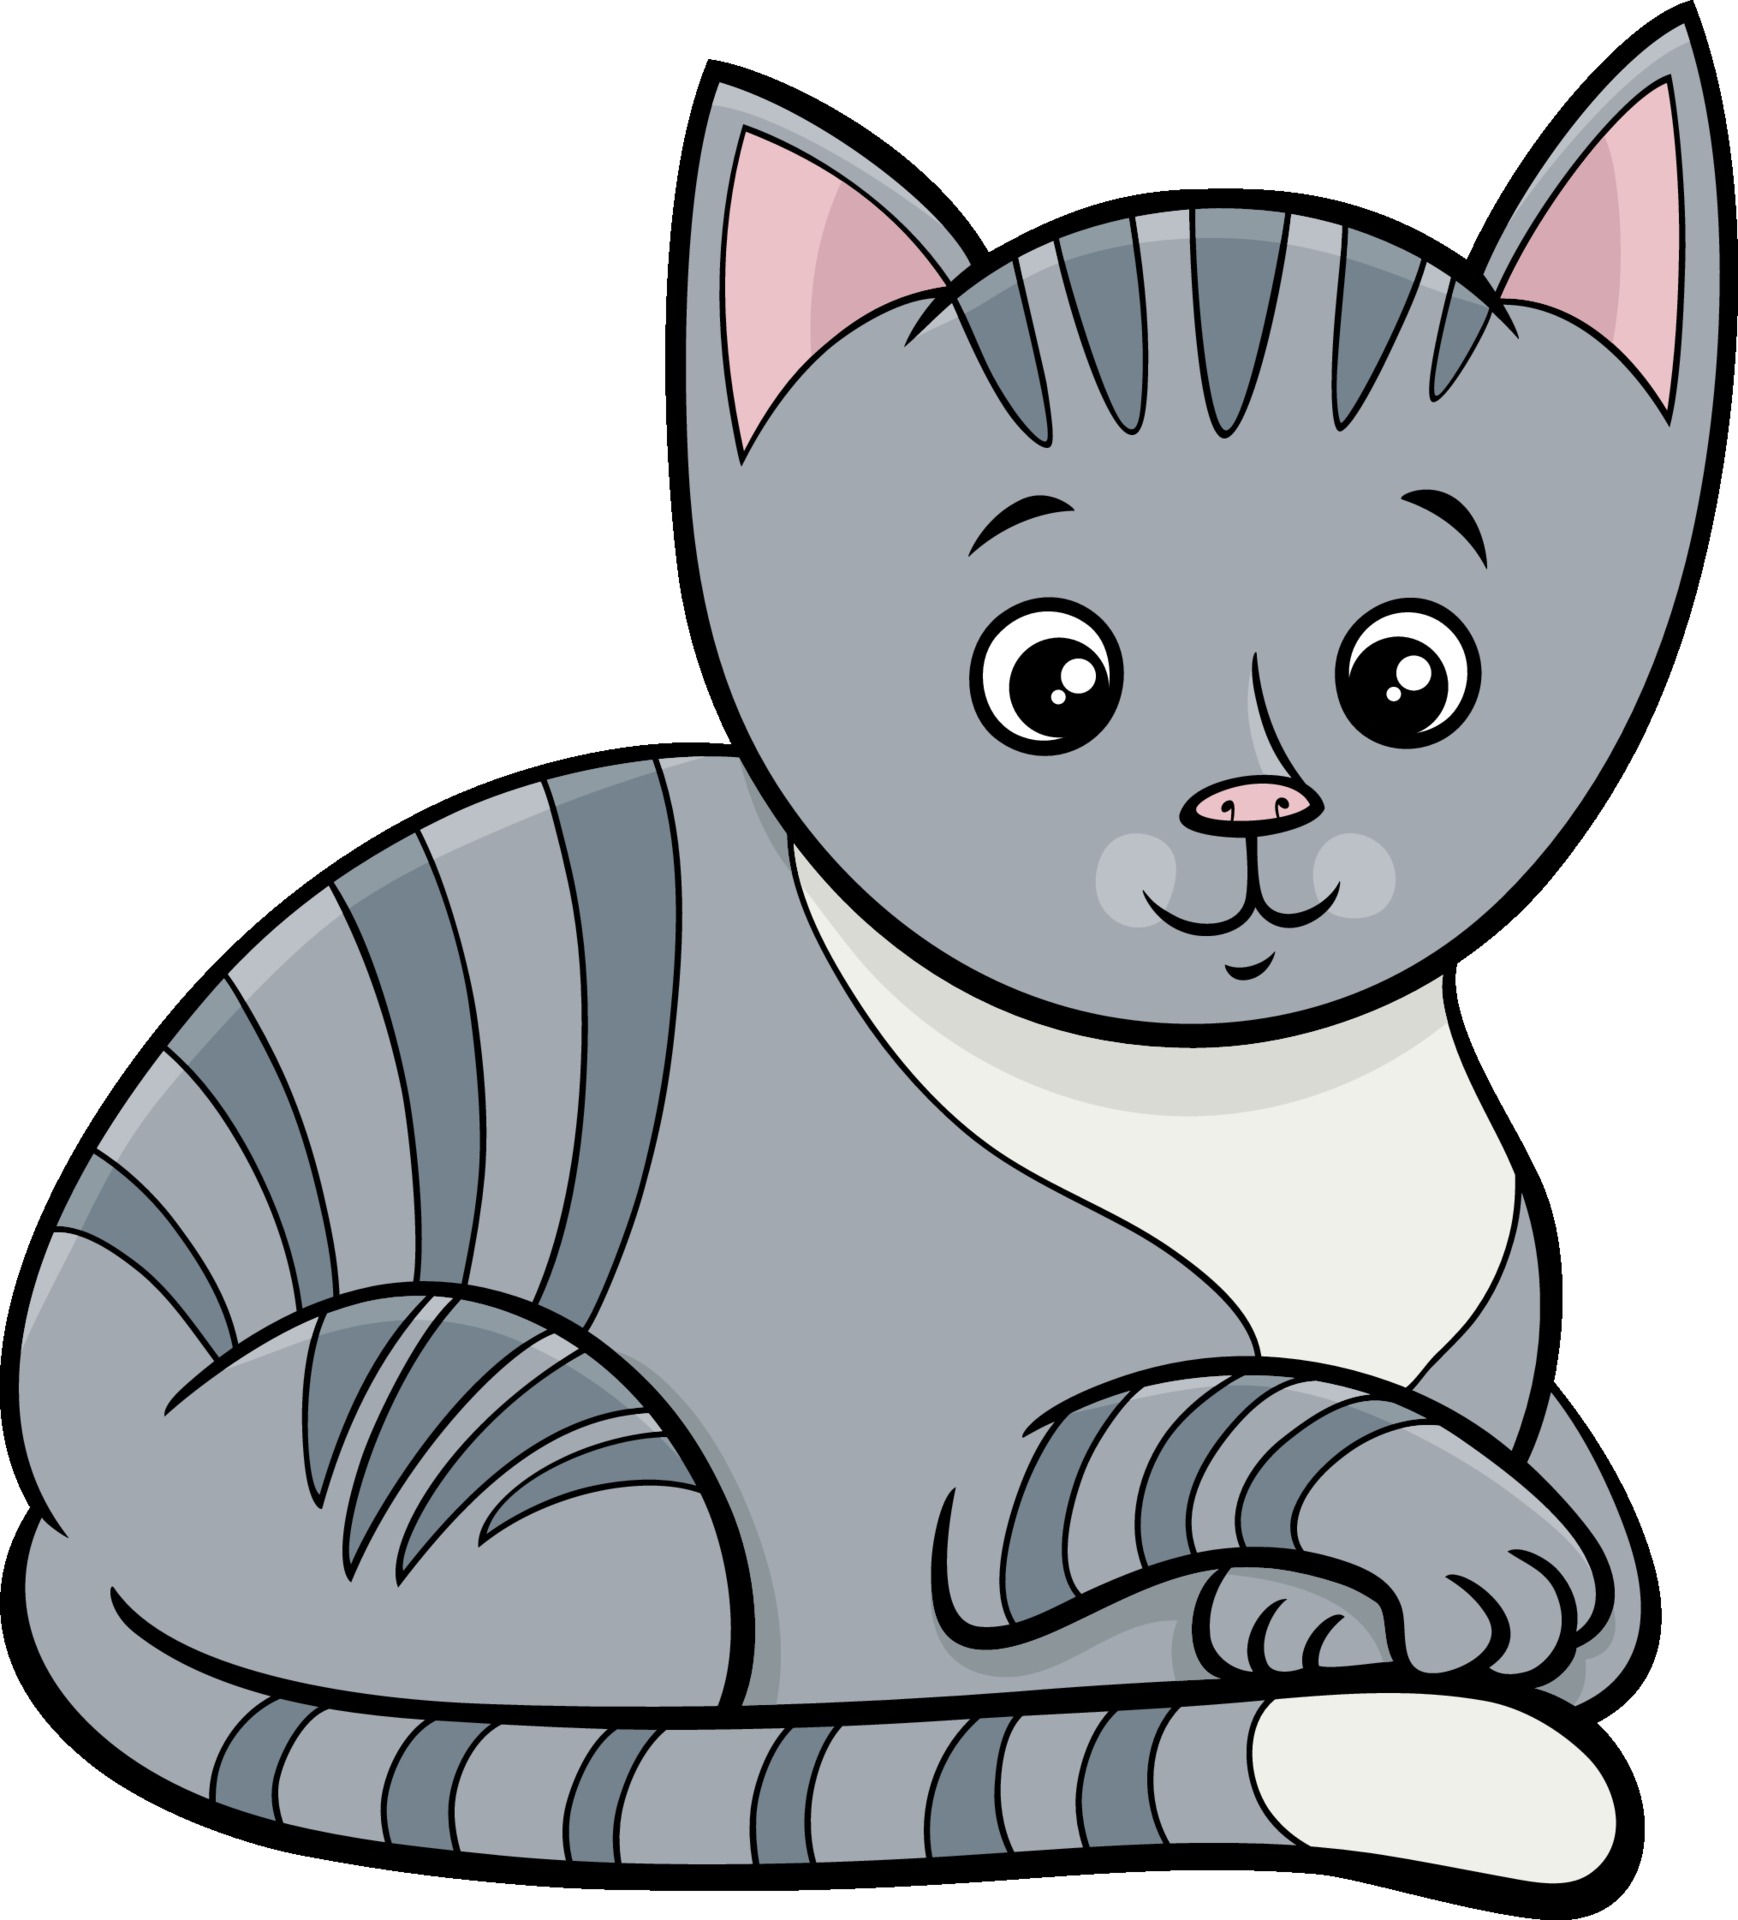 Chat Tigre Ou Personnage Animal De Dessin Anime Chaton Telecharger Vectoriel Gratuit Clipart Graphique Vecteur Dessins Et Pictogramme Gratuit